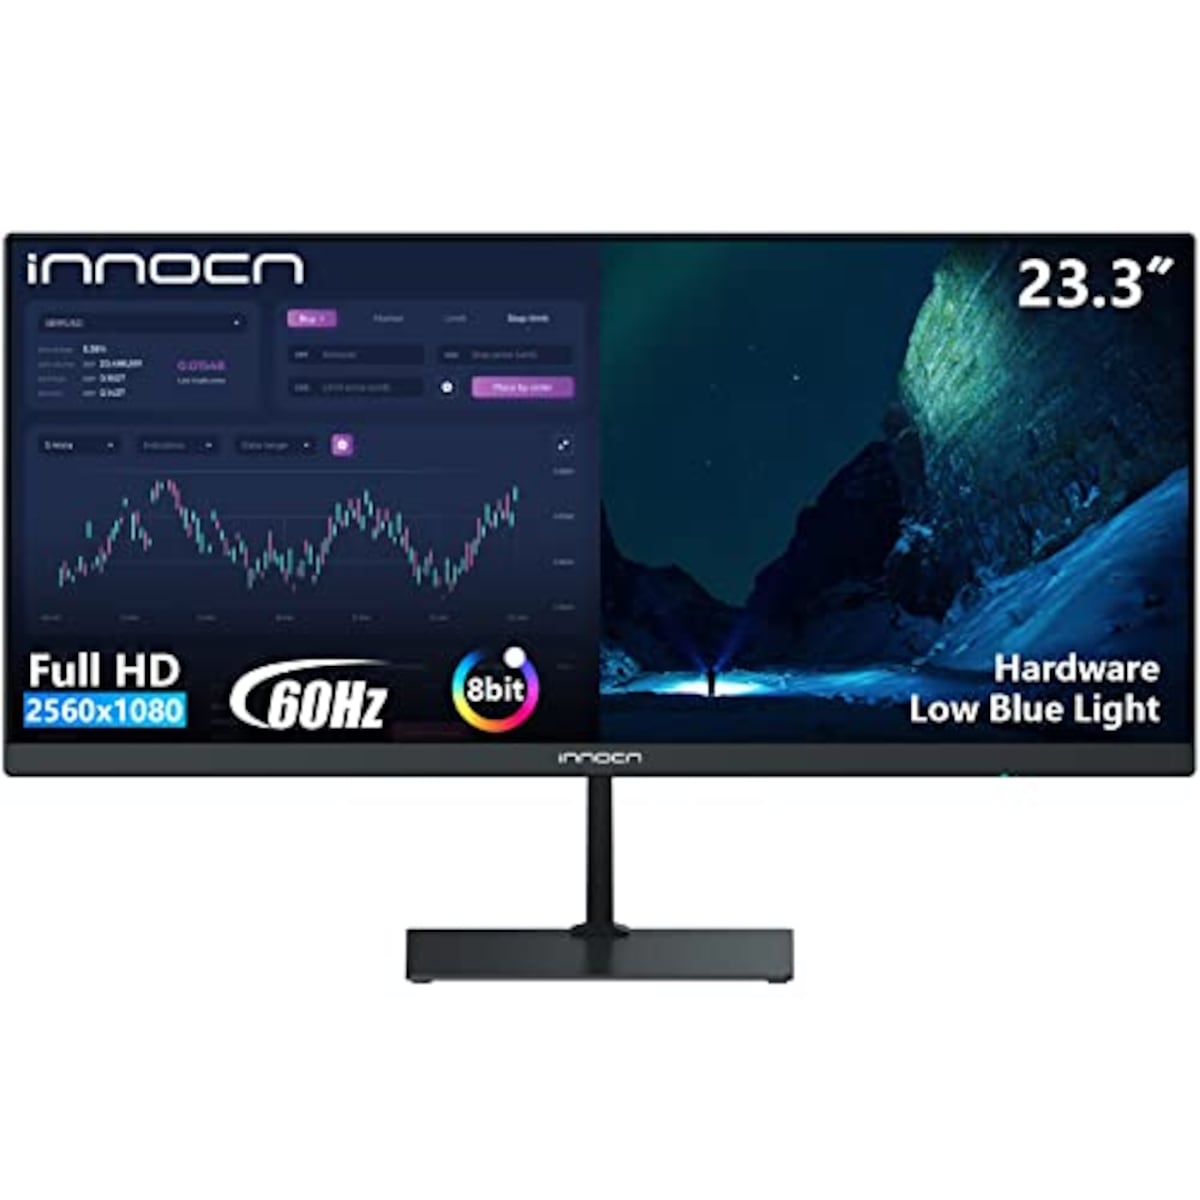 INNOCN 23.3型ワイドスクリーンモニター、21:9 FHD(2560×1080)ディスプレイ、99%sRGB、4000:1コントラスト比、HDMI、DP、ウルトラワイド、ブラック